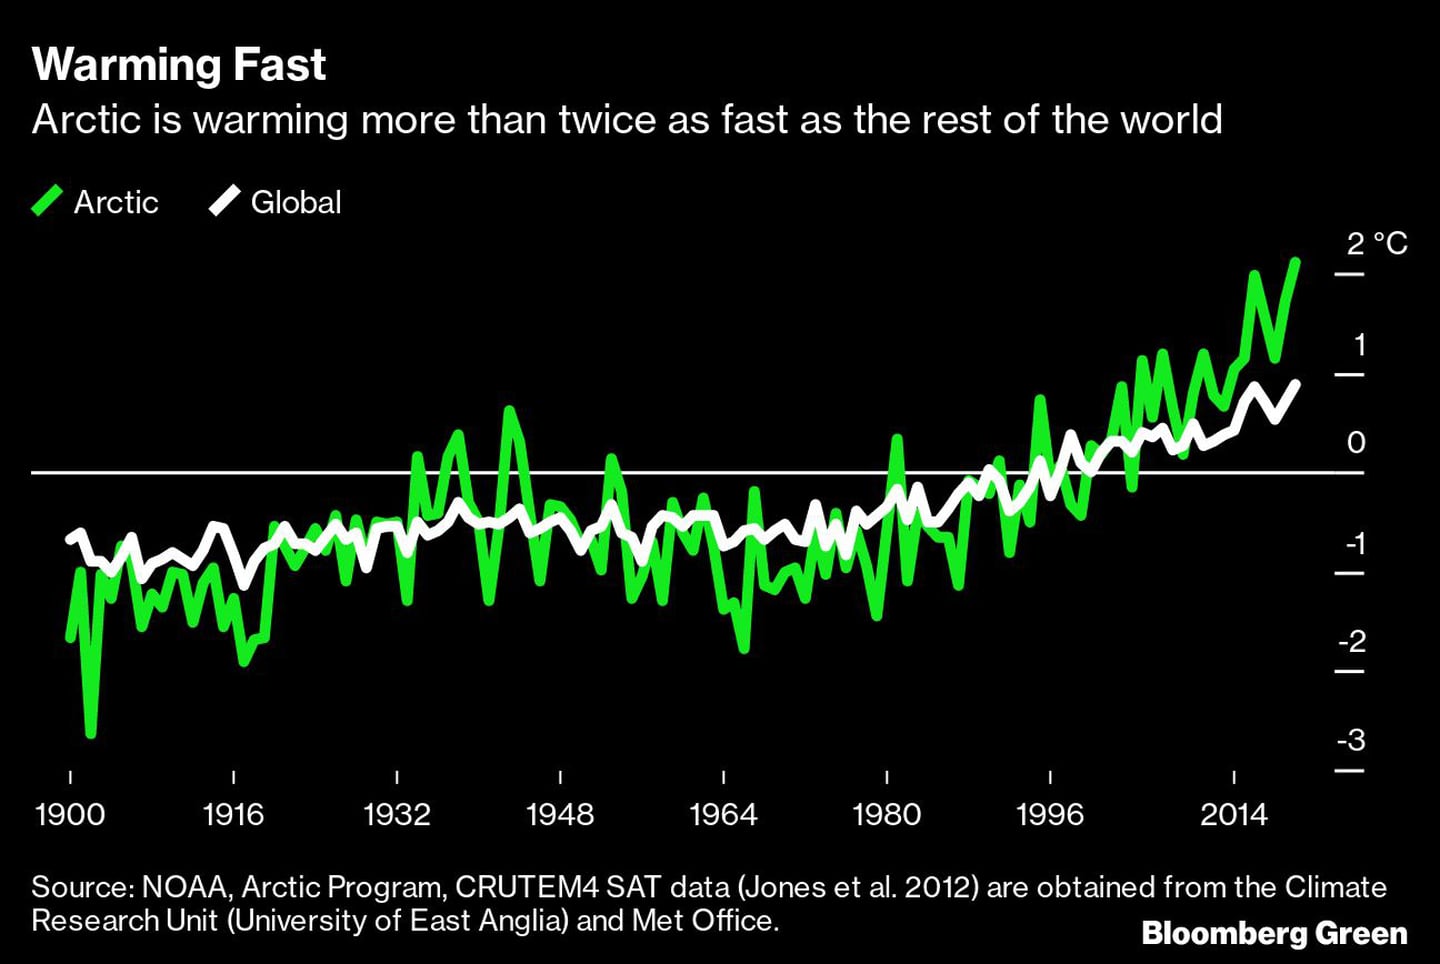 El Ártico se está calentando dos veces más rápido que el resto del mundo.
Verde: Ártico 
Blanco: Globaldfd